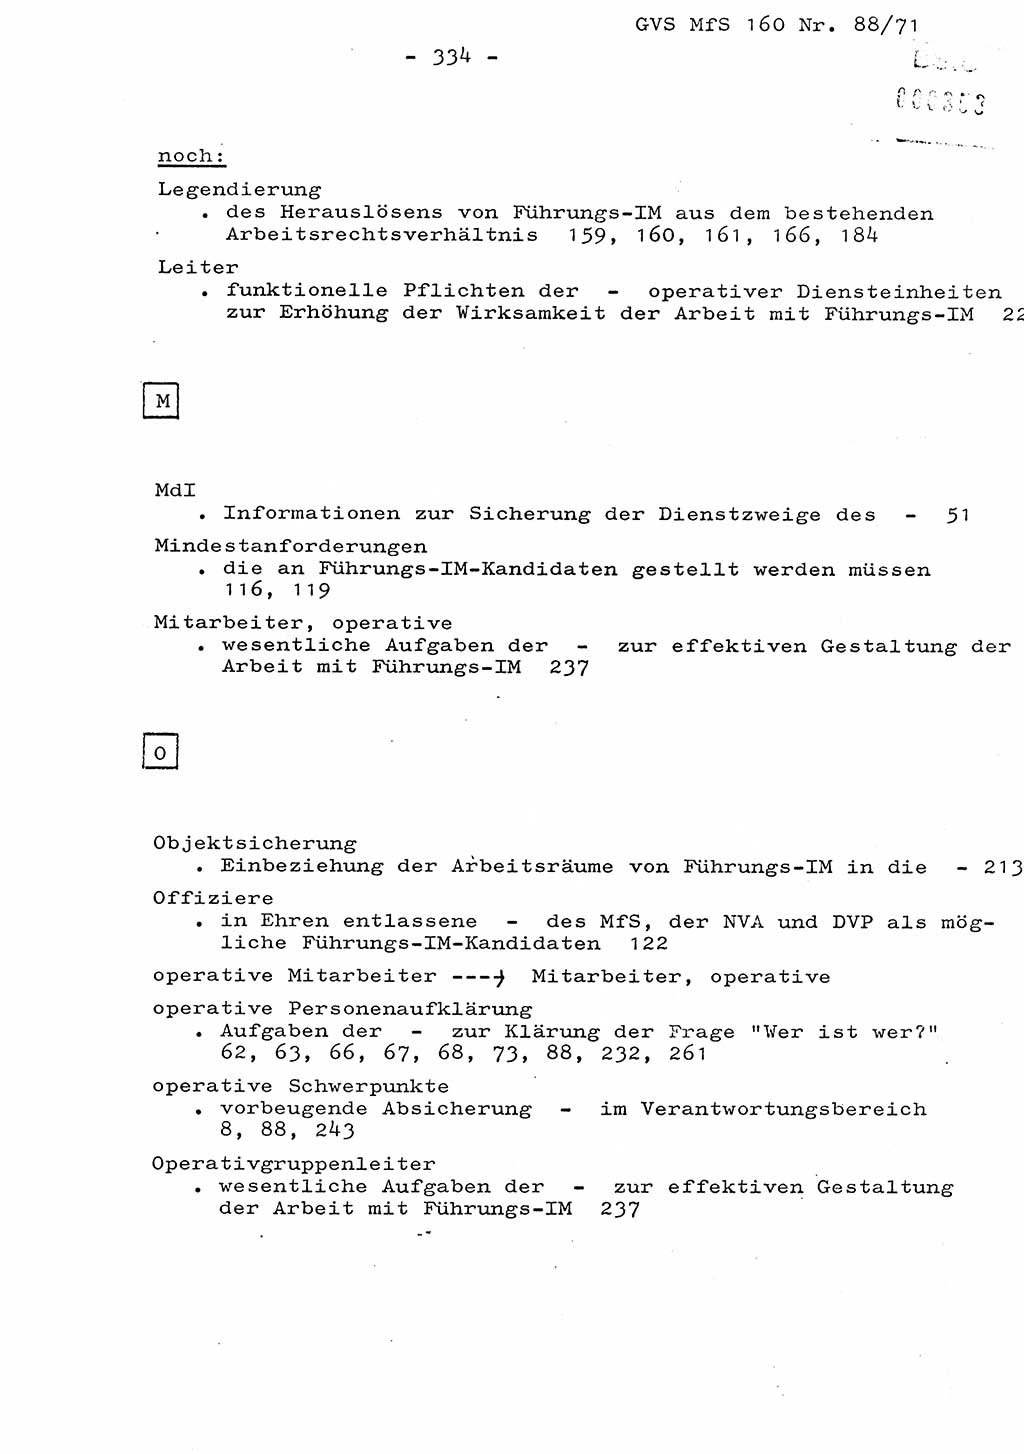 Dissertation Oberstleutnant Josef Schwarz (BV Schwerin), Major Fritz Amm (JHS), Hauptmann Peter Gräßler (JHS), Ministerium für Staatssicherheit (MfS) [Deutsche Demokratische Republik (DDR)], Juristische Hochschule (JHS), Geheime Verschlußsache (GVS) 160-88/71, Potsdam 1972, Seite 334 (Diss. MfS DDR JHS GVS 160-88/71 1972, S. 334)